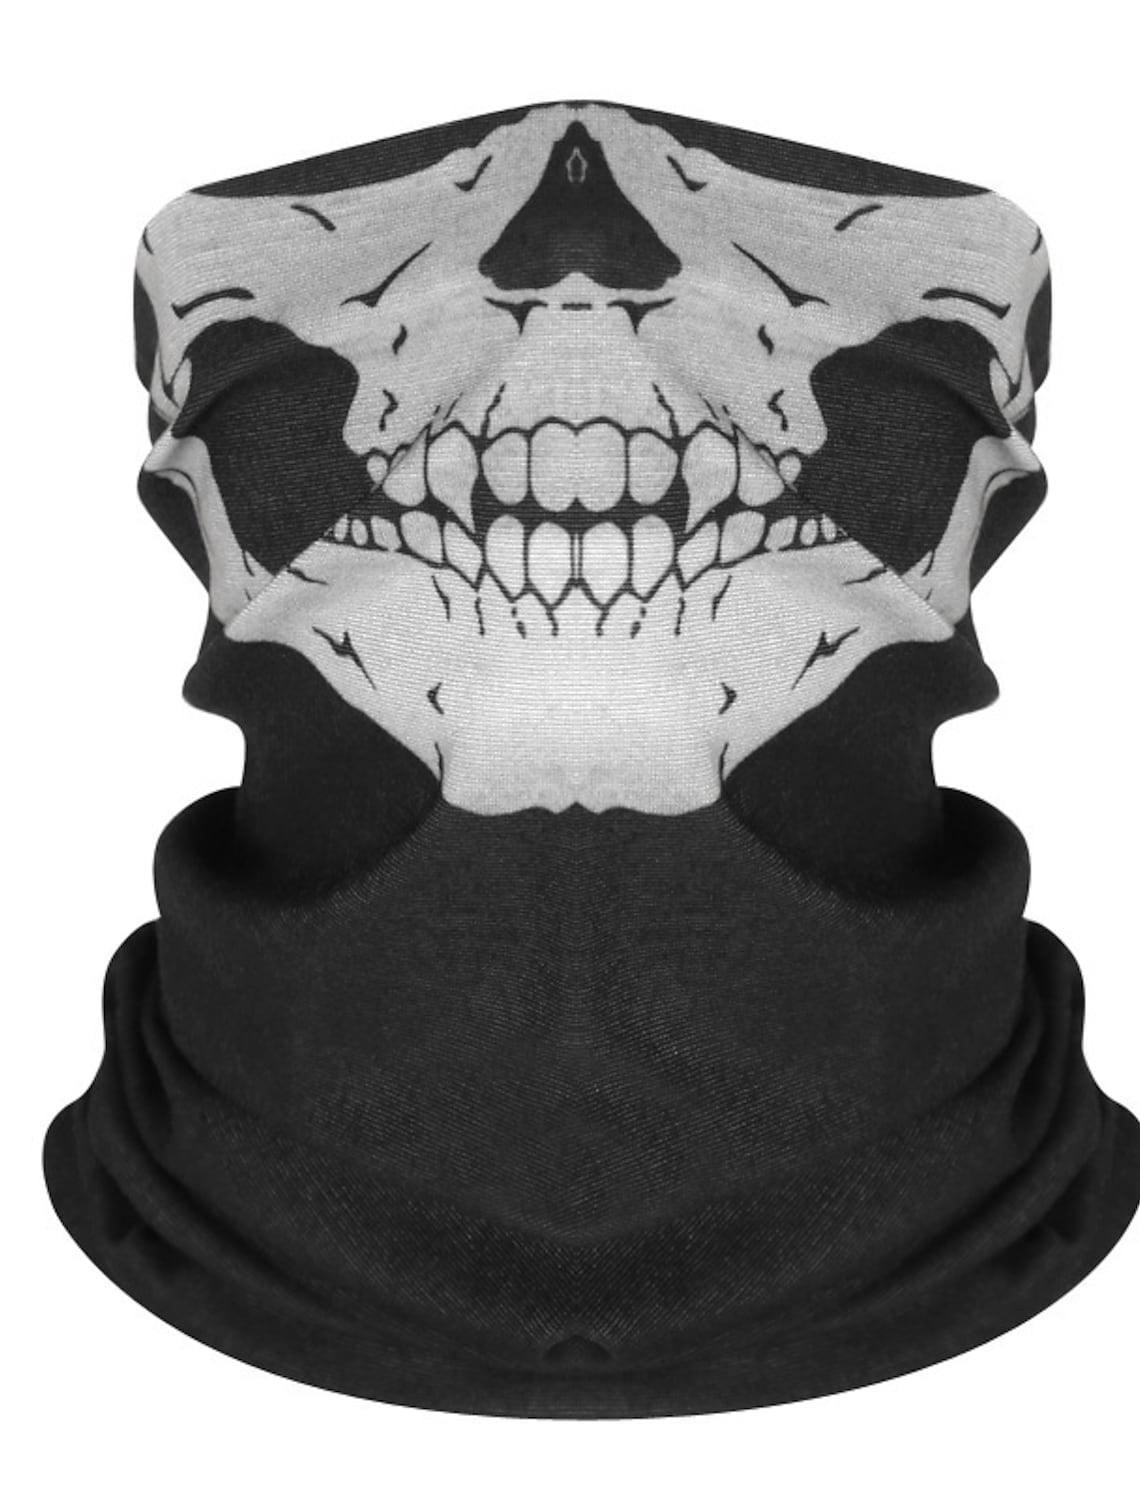 Dödskallemasken, eller en så kallad scull mask, är en vanlig symbol bland våldsbejakande högerextremister.